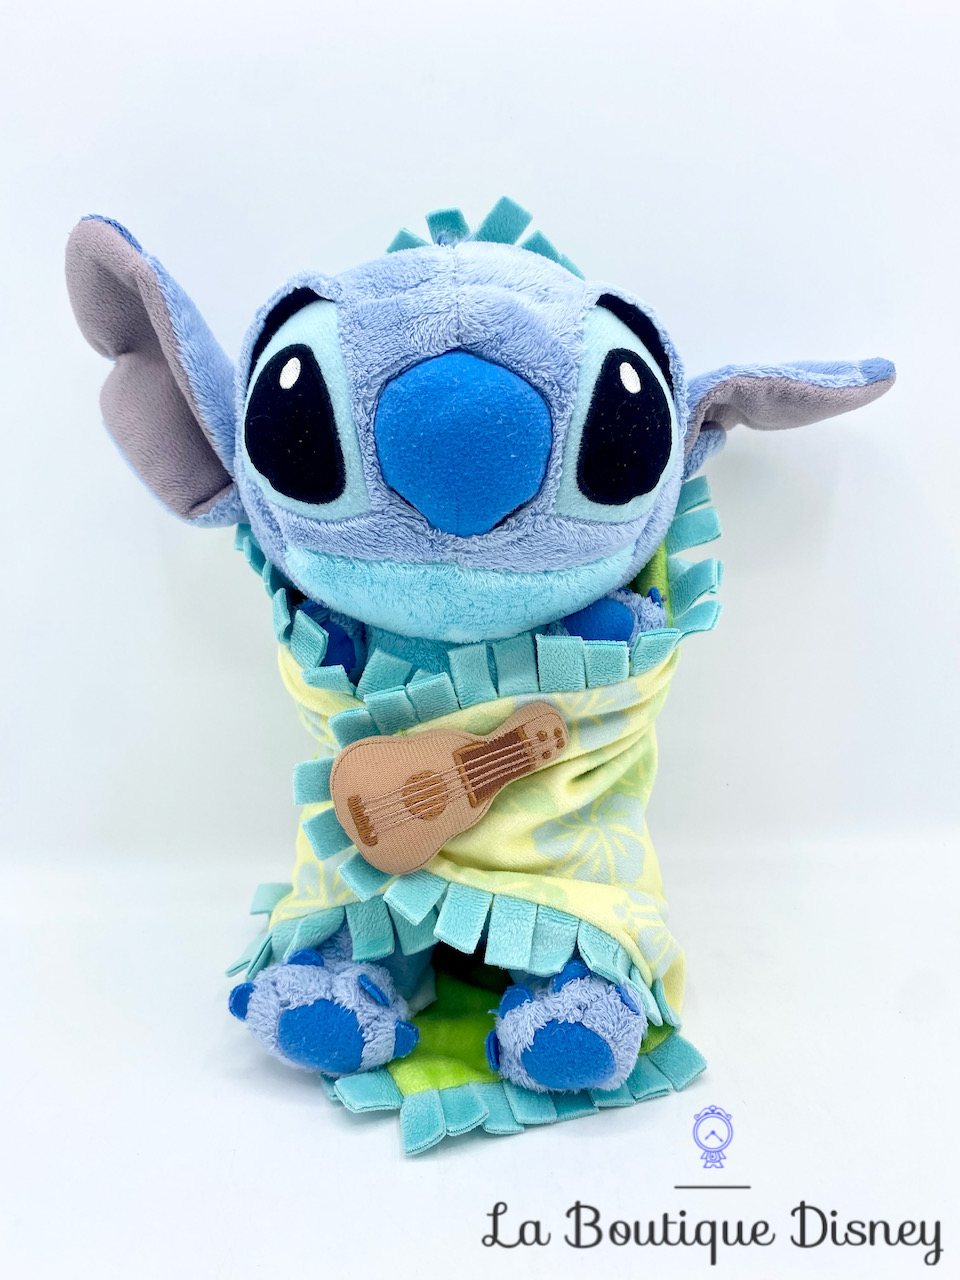 Lilo&Stitch - Peluche Stitch Bleu Avec Son et Chemise Hawaïenne - 33cm -  Qualité Super Soft